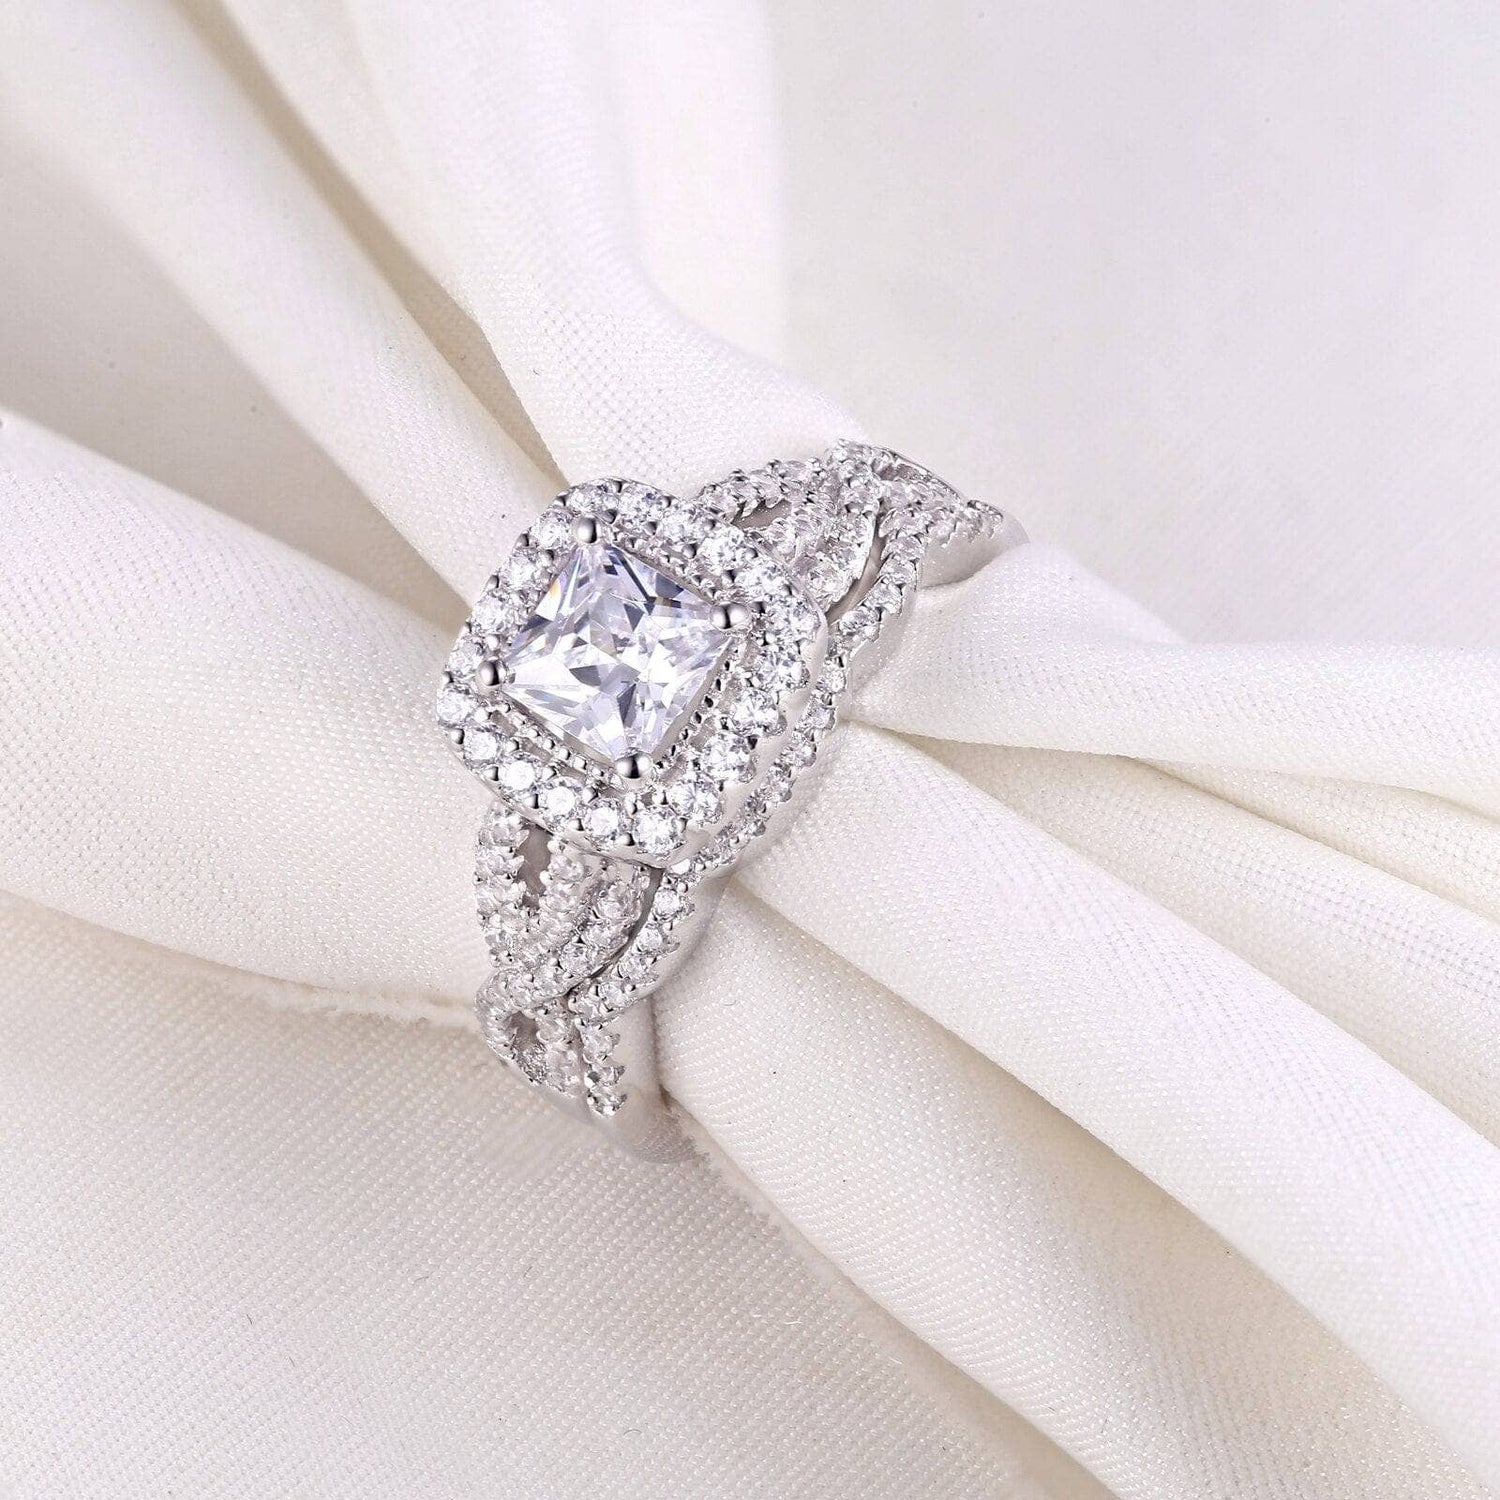 2Pcs Princess Cut White EVN Stone Ring Set-Black Diamonds New York